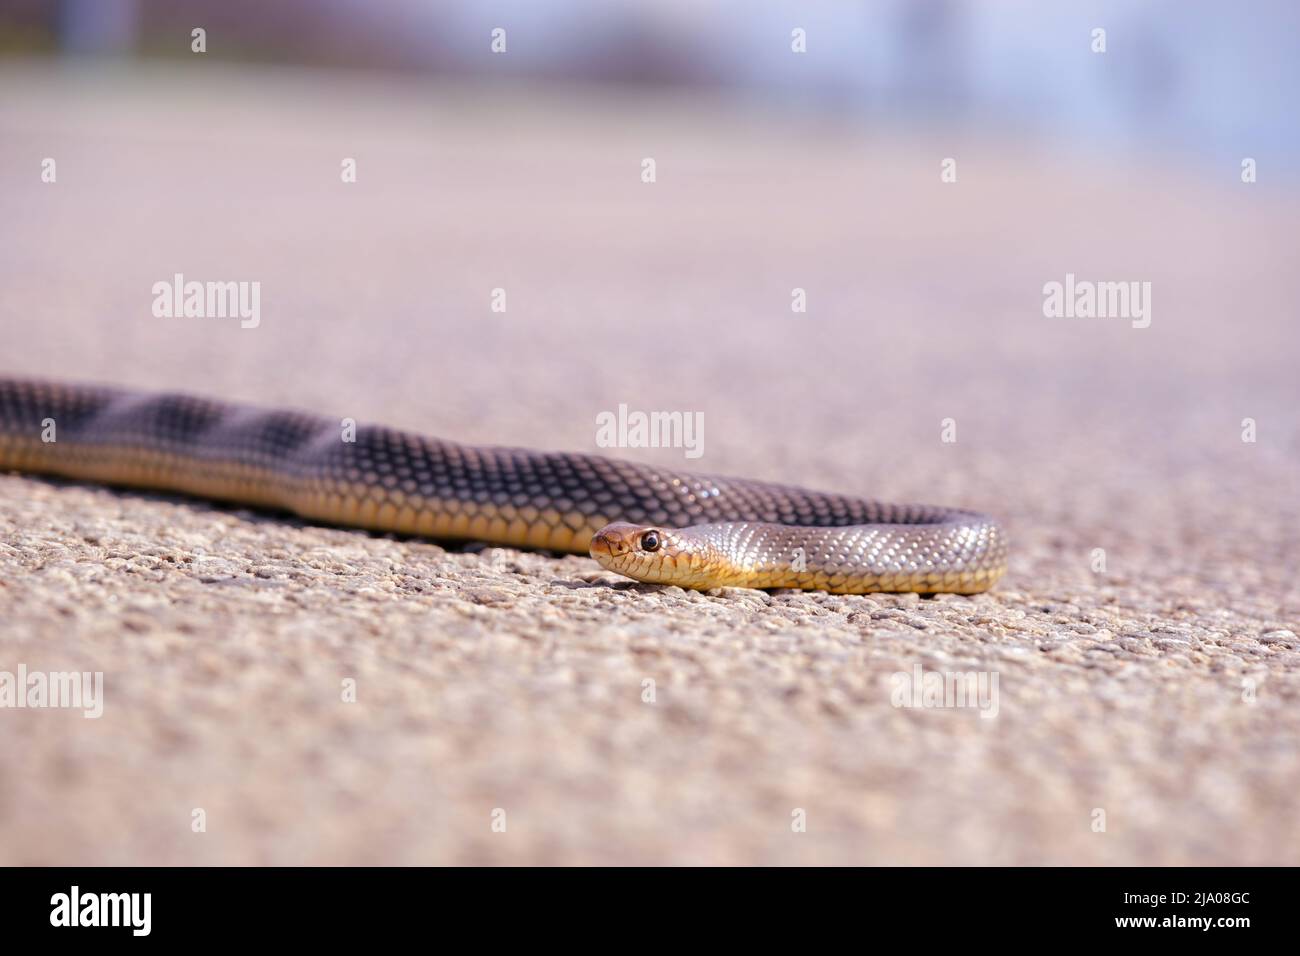 Serpiente marrón cruzando la tierra camino. Serpiente en la carretera. Foto de stock